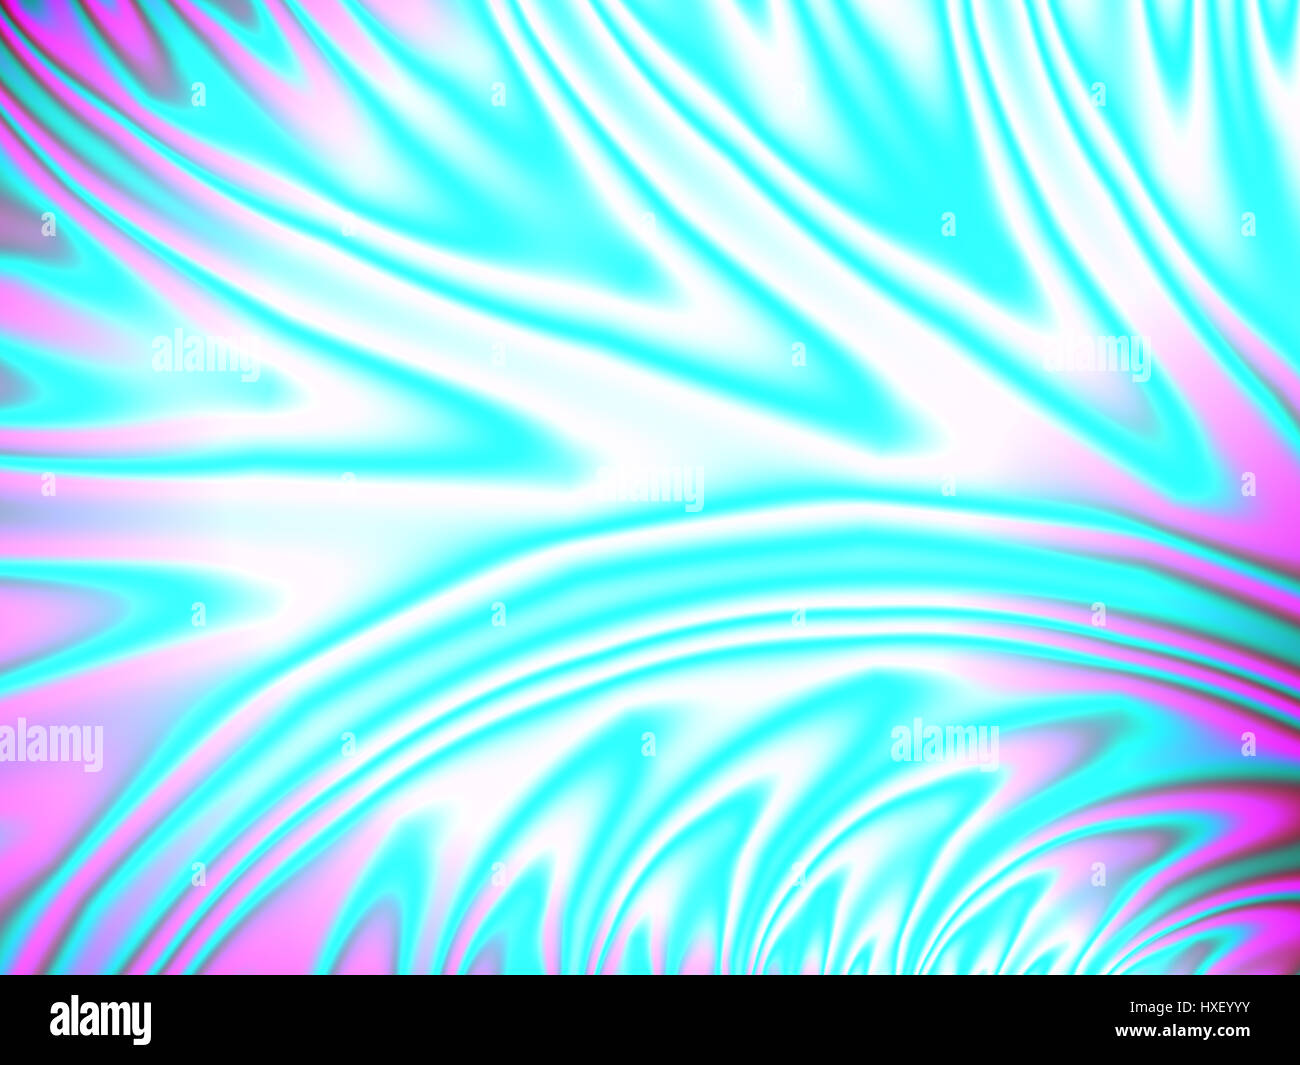 Zarte Farben glatt fließende Konturlinien der digitalen Fraktalbild in Türkis Blau und violett auf weißem Hintergrund Stockfoto